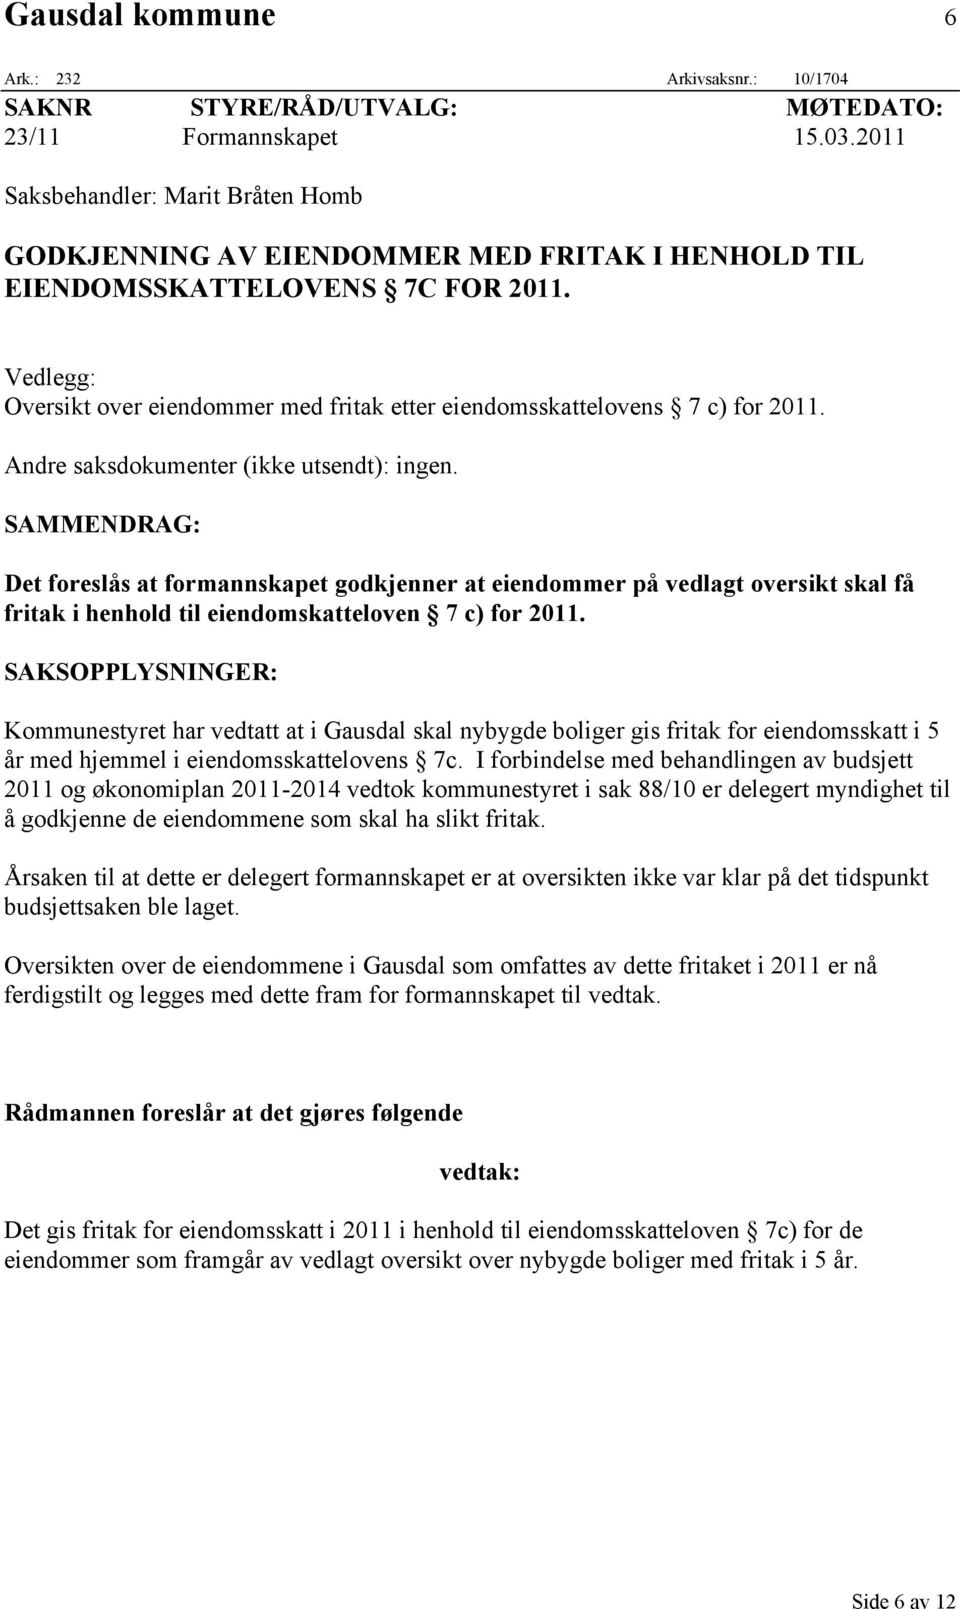 Vedlegg: Oversikt over eiendommer med fritak etter eiendomsskattelovens 7 c) for 2011. Andre saksdokumenter (ikke utsendt): ingen.